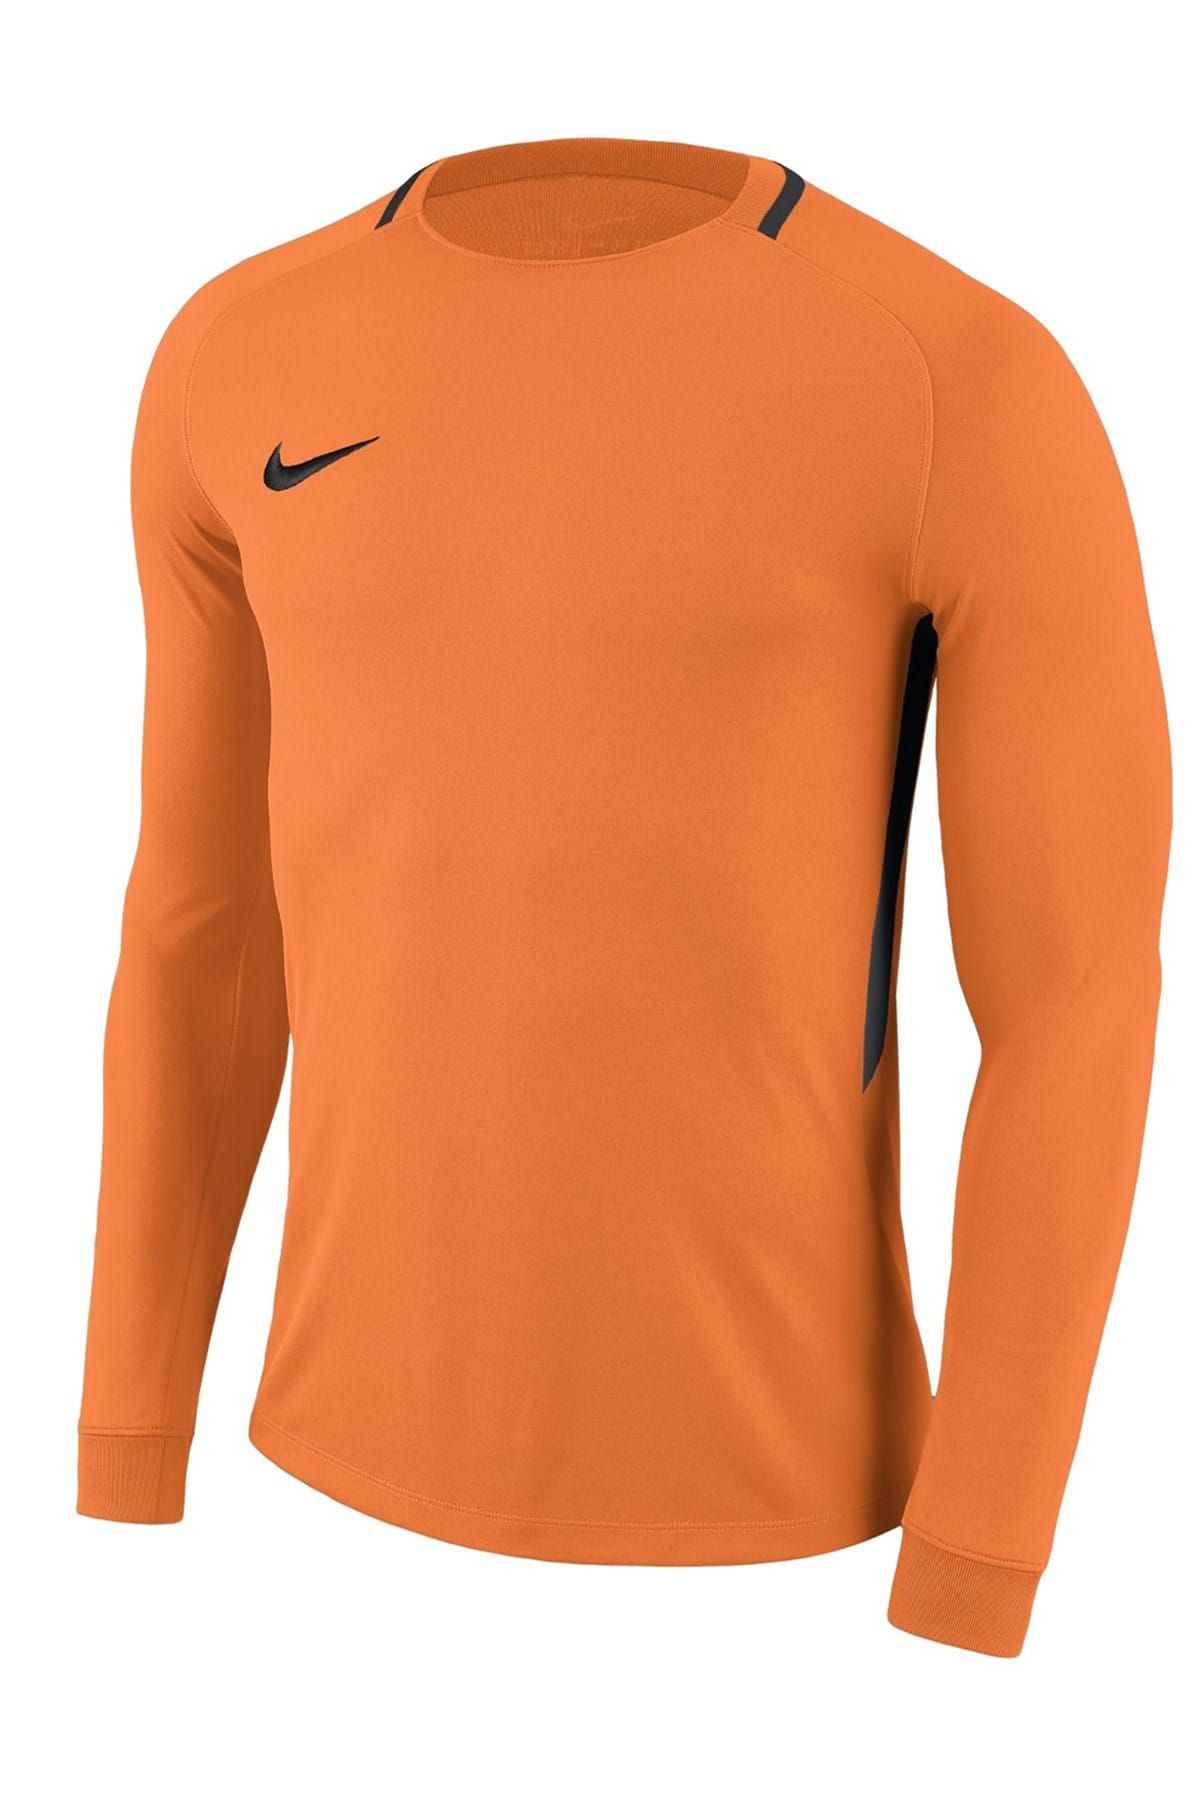 Nike Erkek Sweatshirt - M Nk Dry Park Iıı Jsy Ls Gk - 894509-803